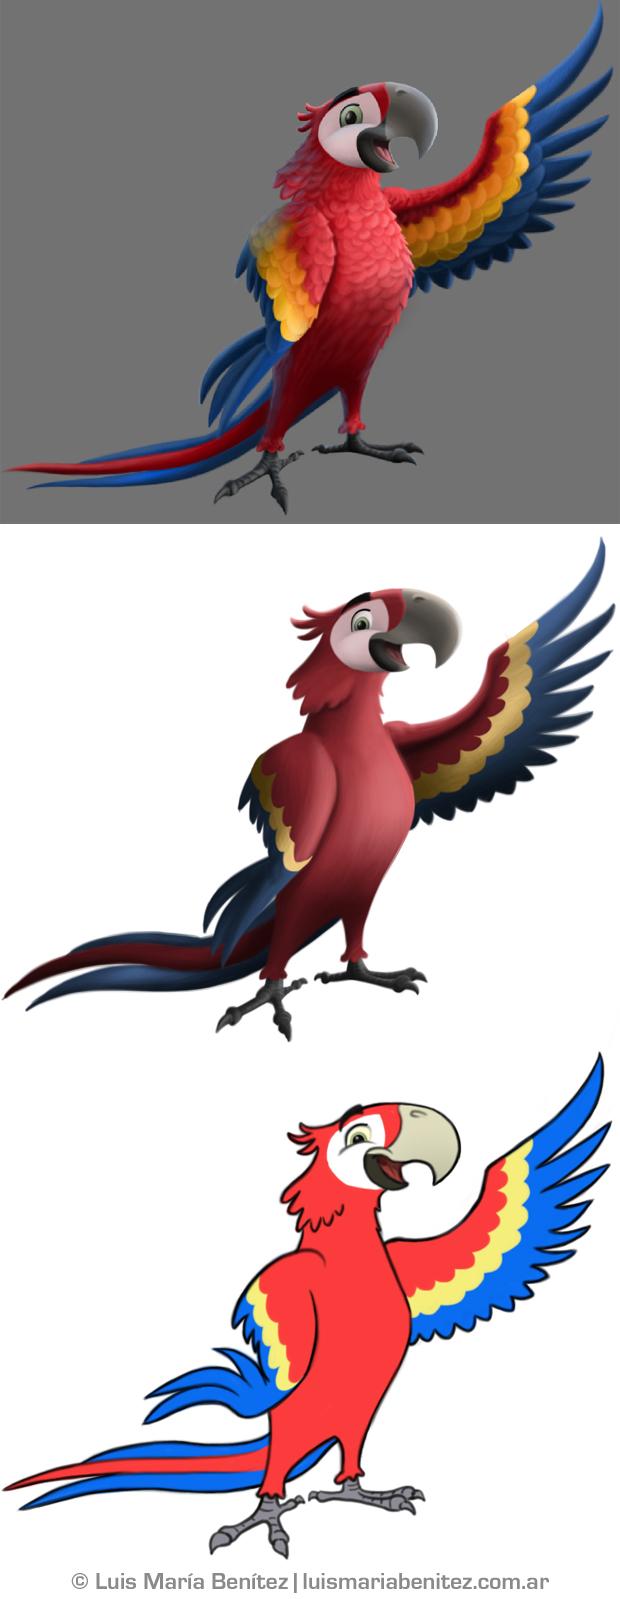 Character design process (Scarlet Macaw) / Proceso de diseño de personaje (Guara Roja) © Luis María Benítez